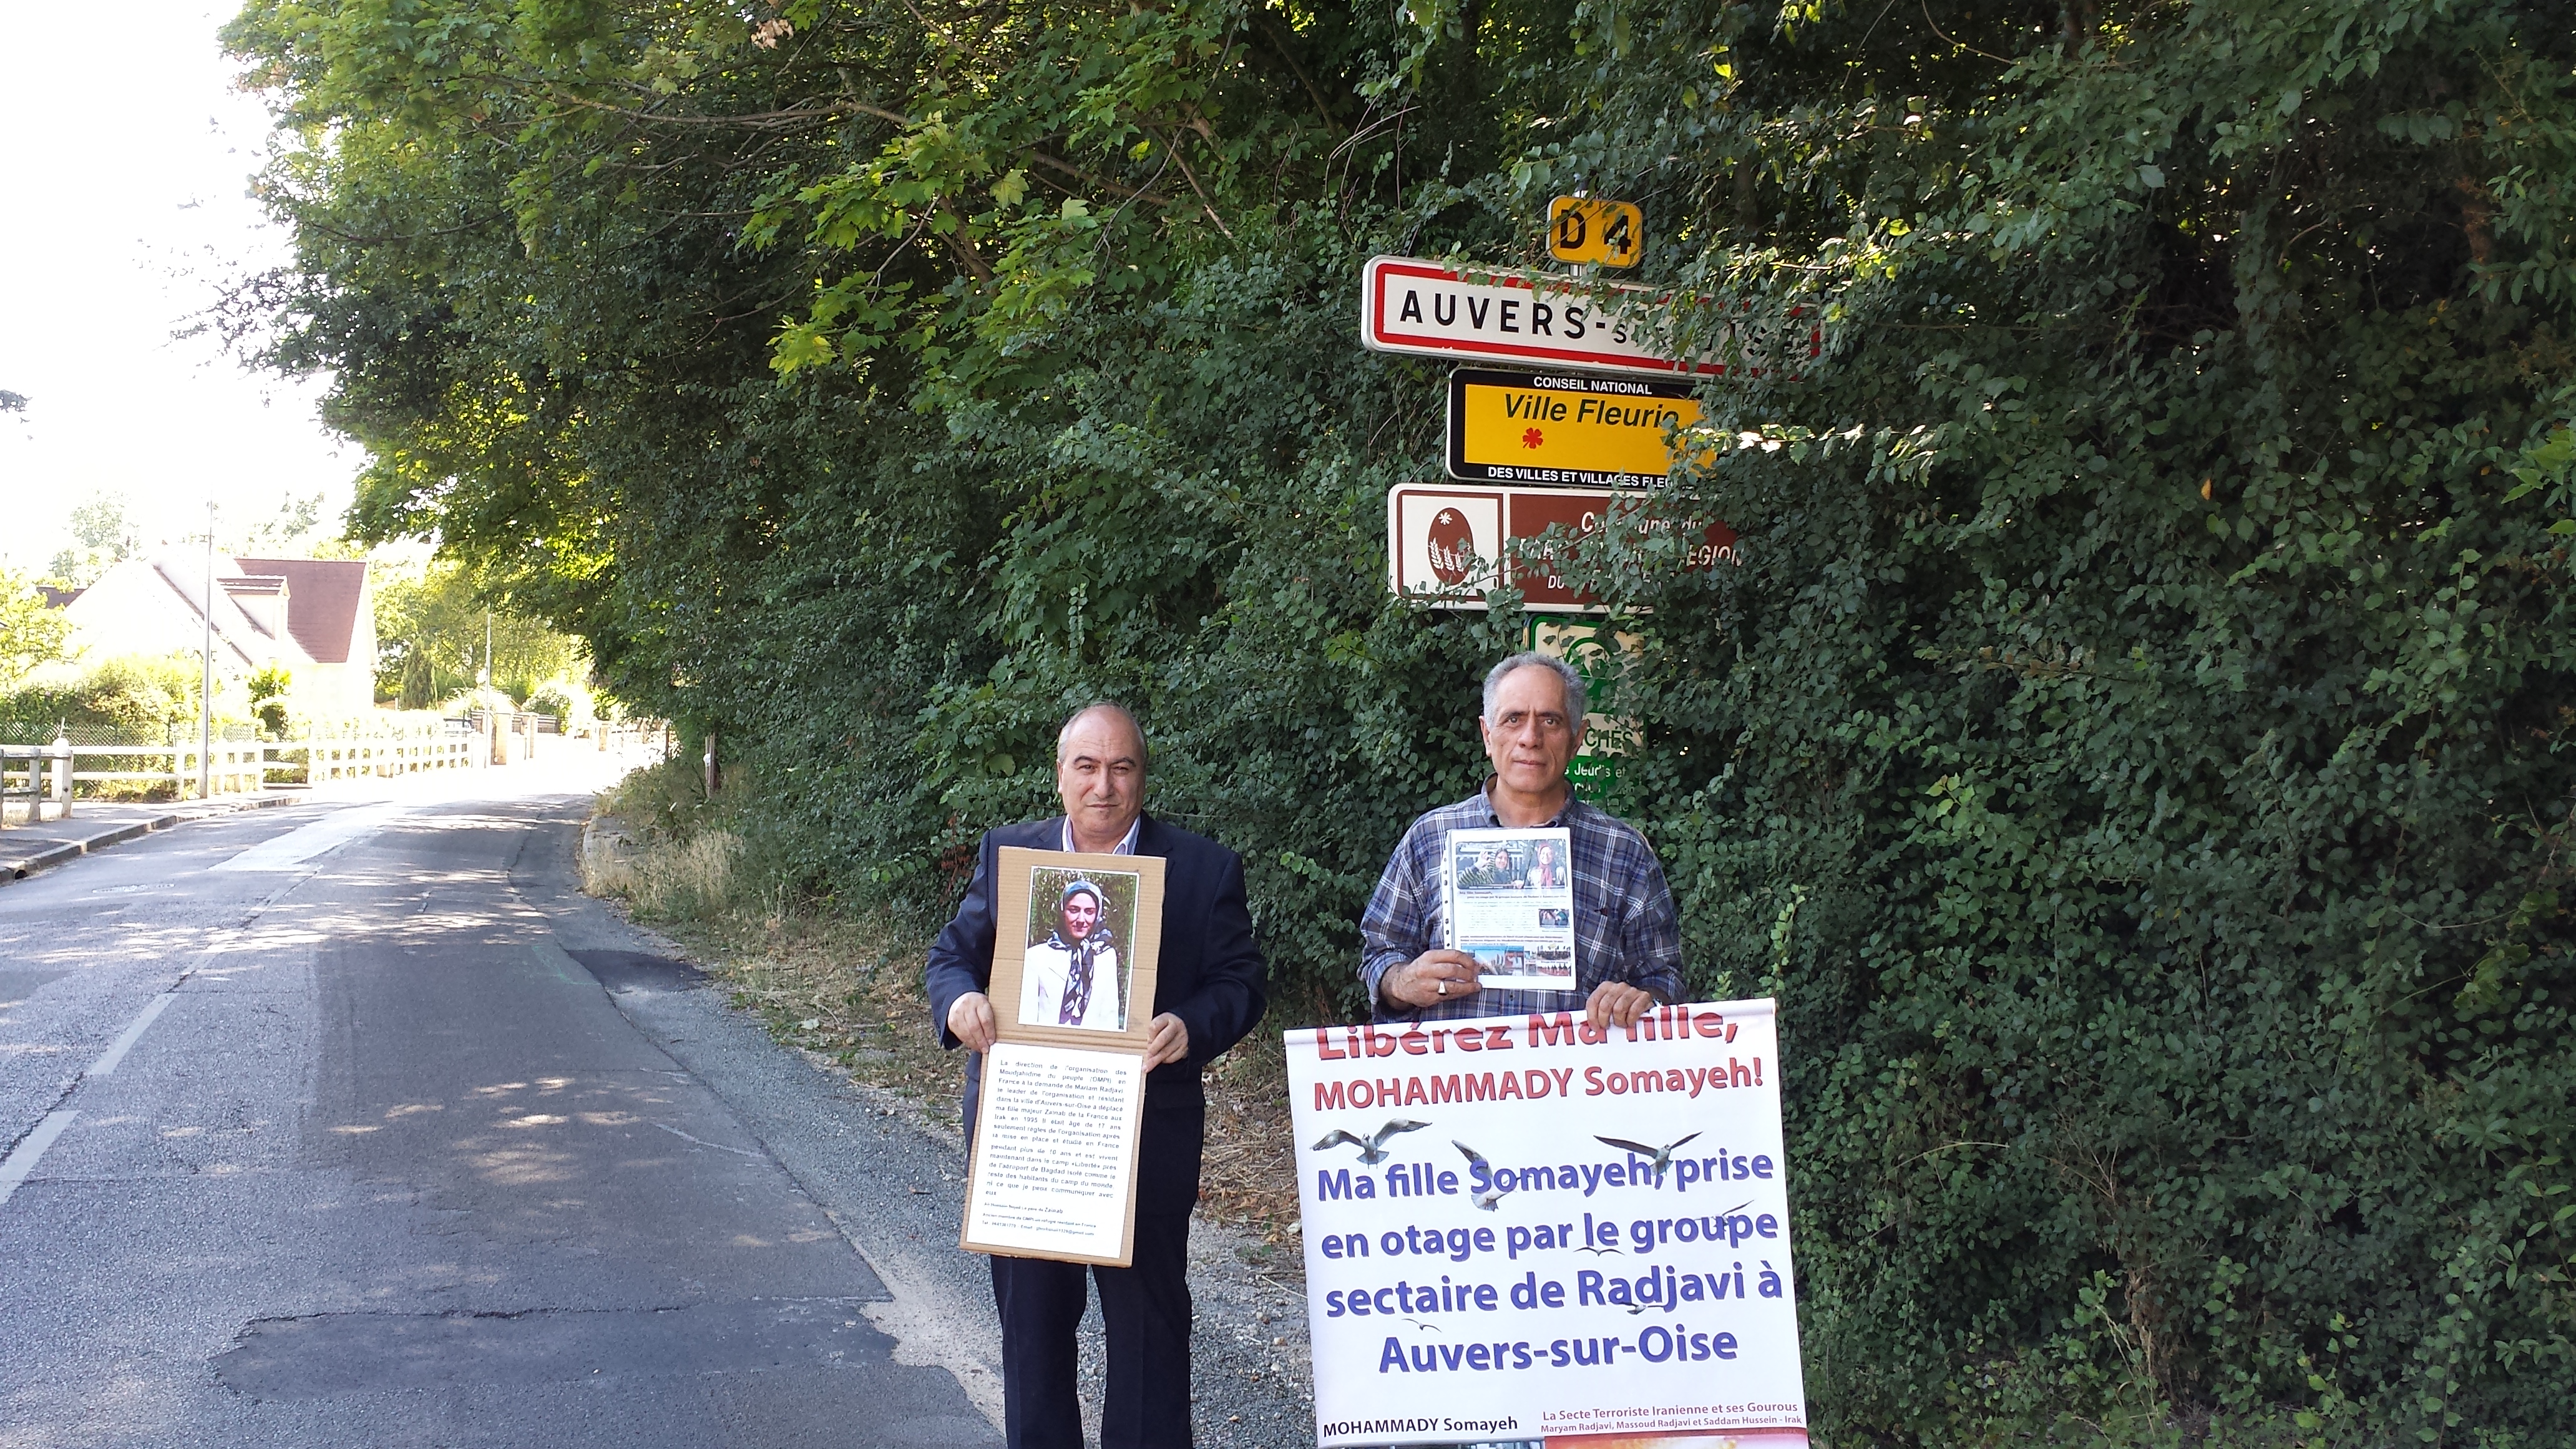 آکسیون دو پدر معترض در فرمانداری اورسورواز فرانسه